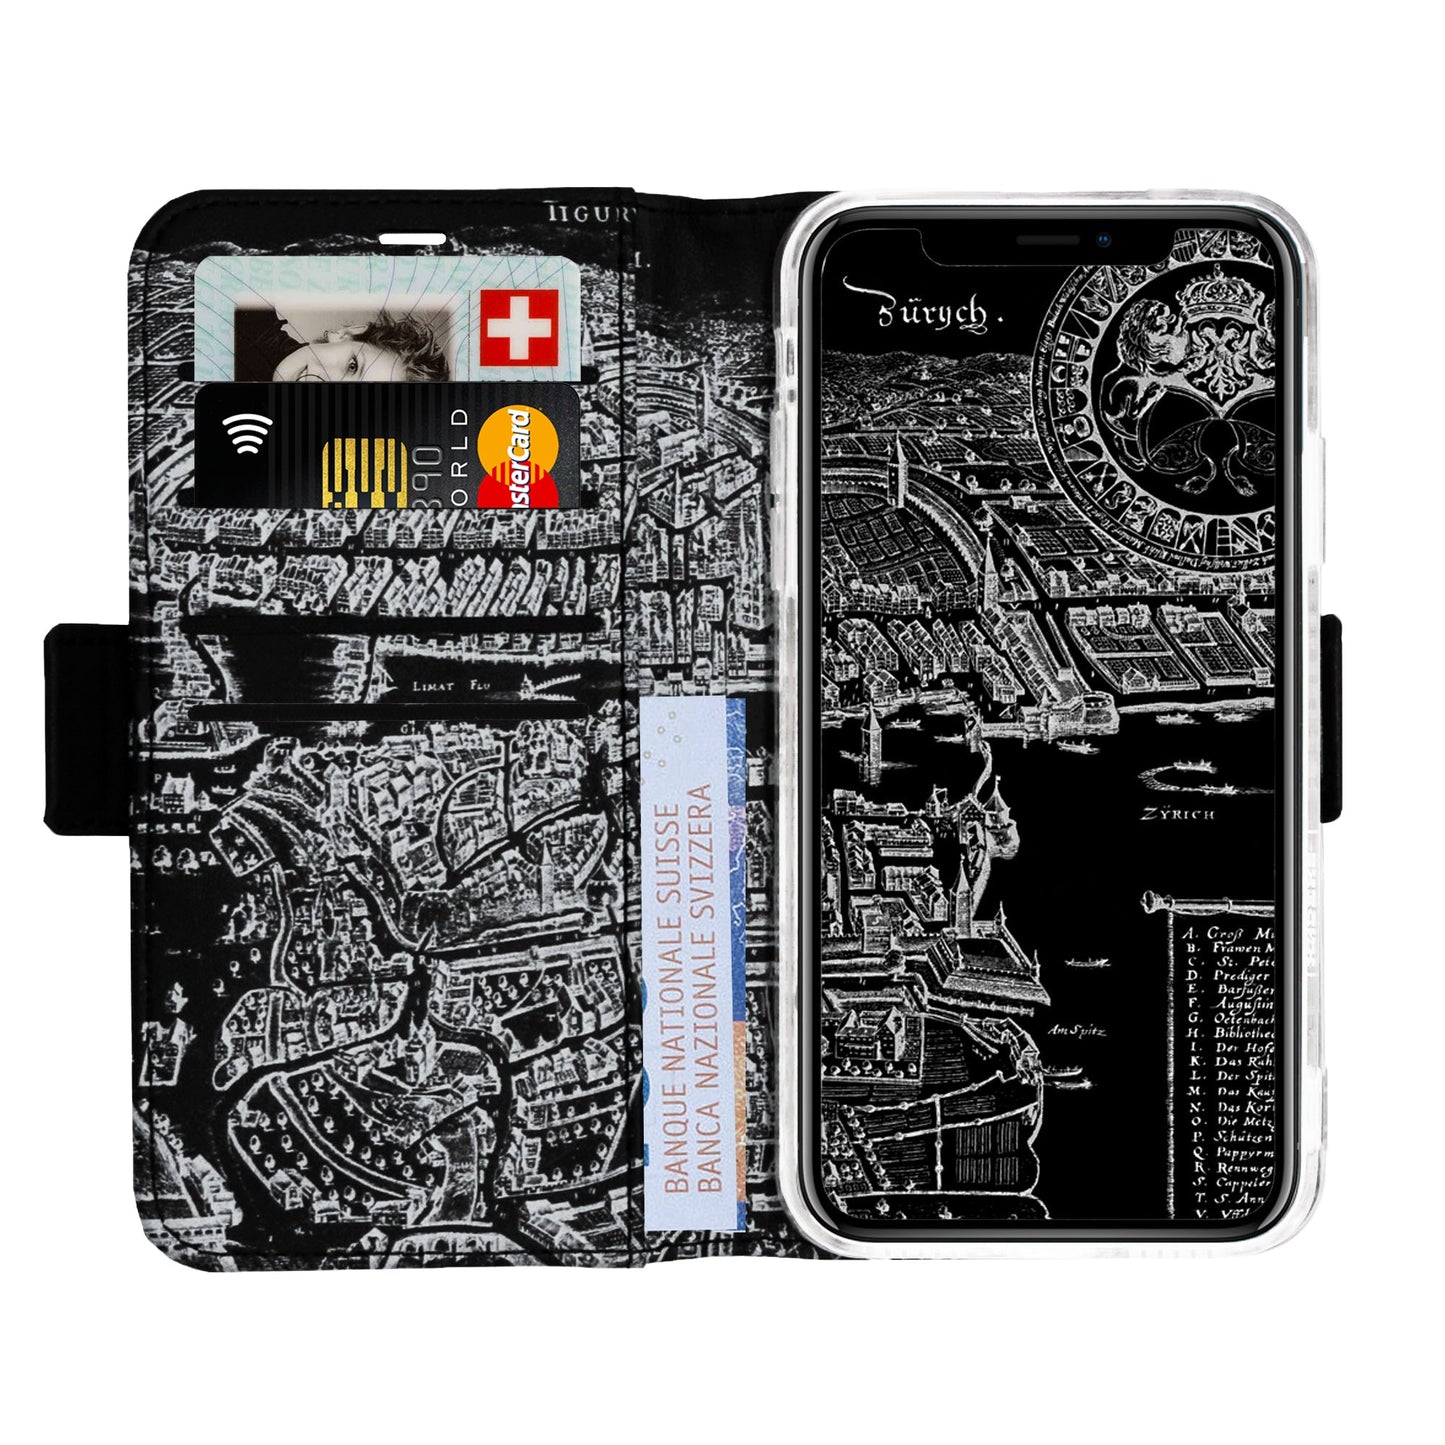 Zürich Merian Negativ Victor Case für iPhone 11 Pro Max